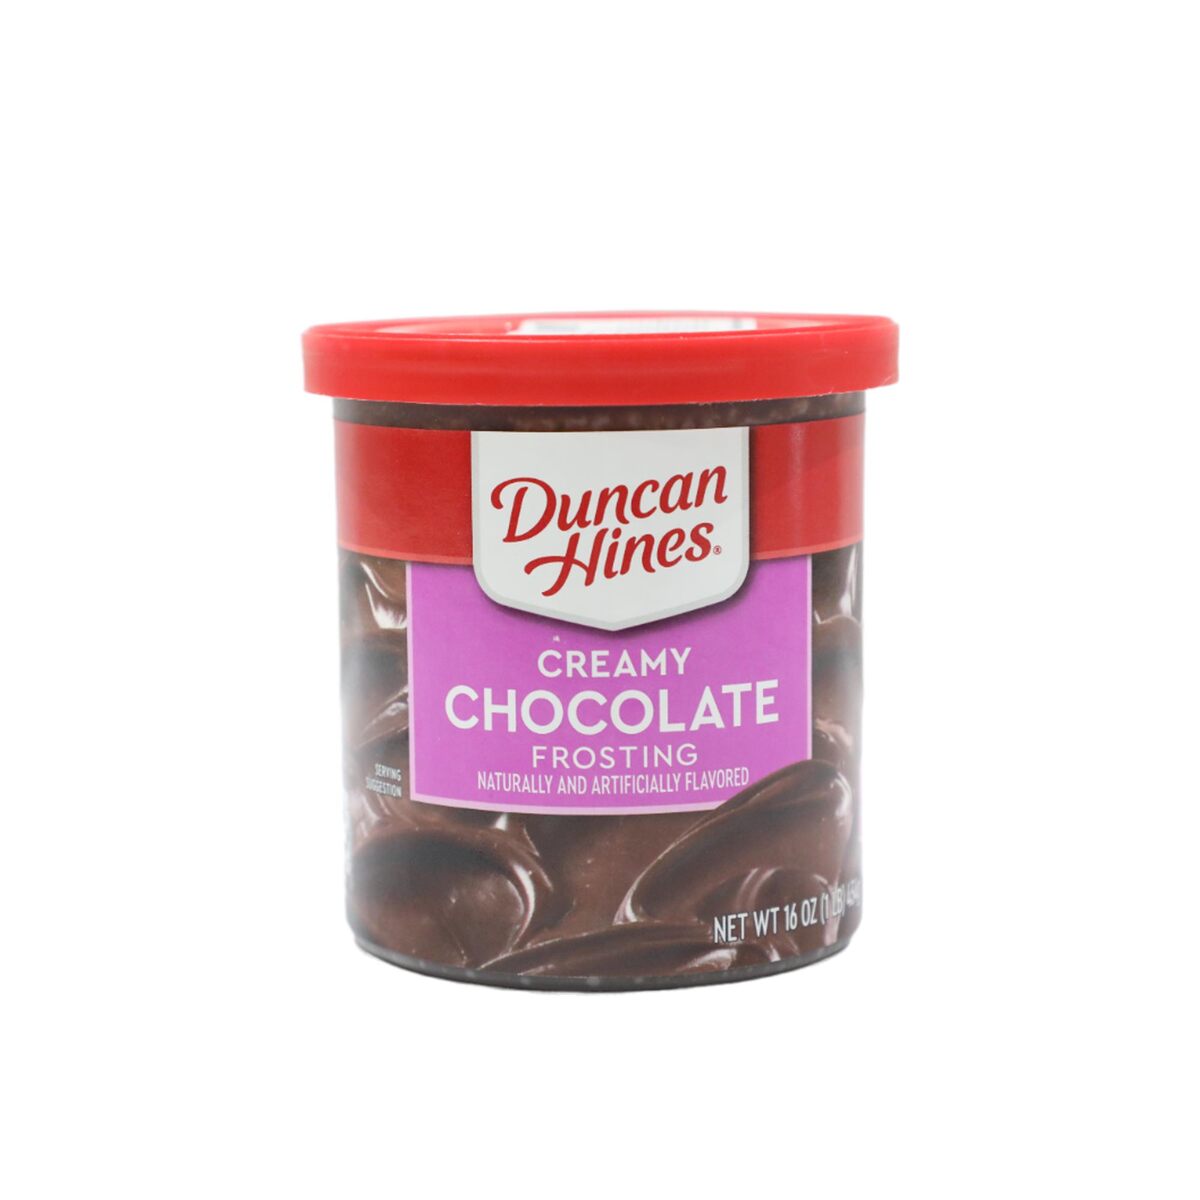 دانكن هاينز كريمة شوكولاتة لتغطية الكيك 454 جم